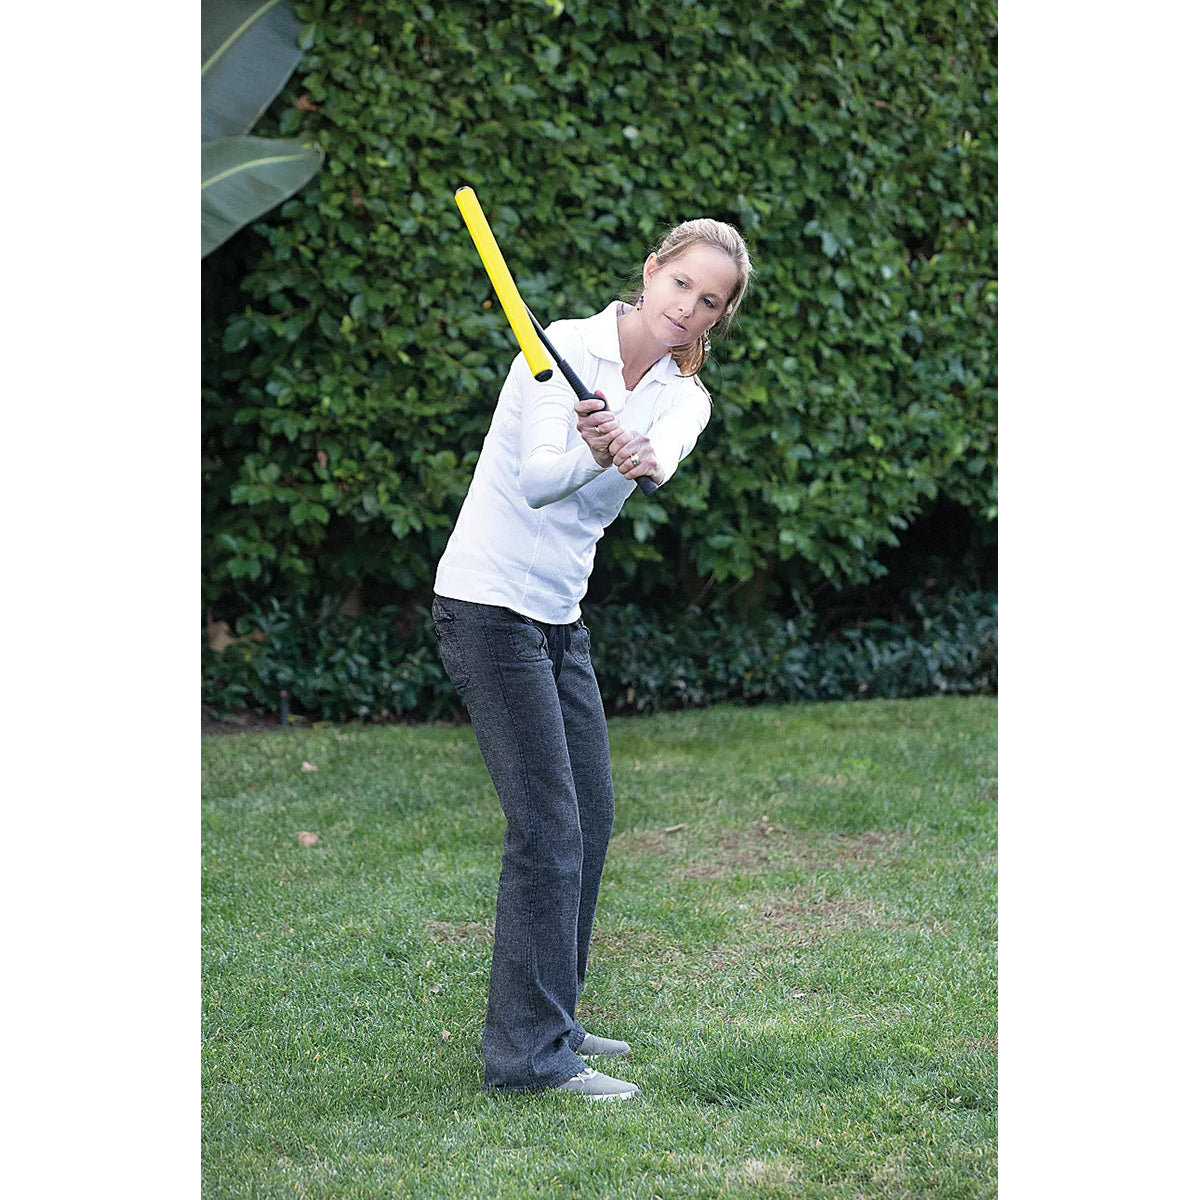 SKLZ Power Position Right-Handed Golf Swing Trainer - Black/Yellow SKLZ